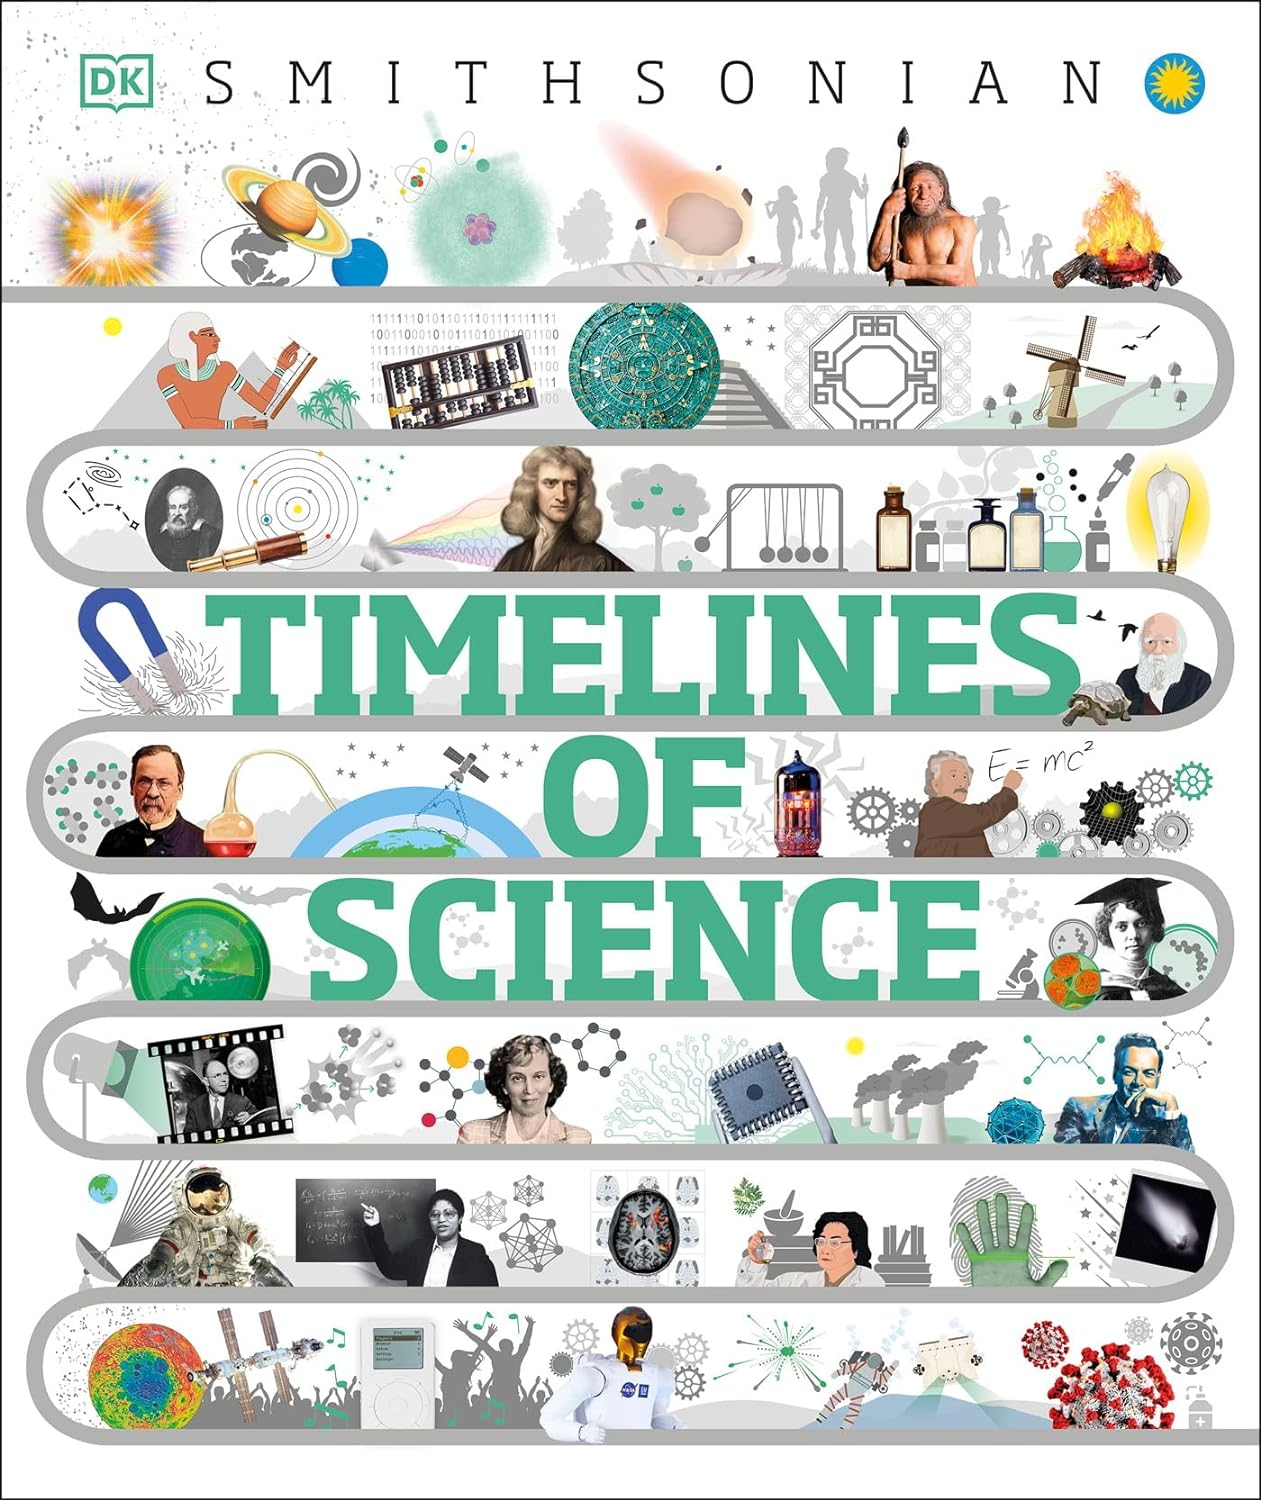 Timelines of Science (DK Children's Timelines) kindle book